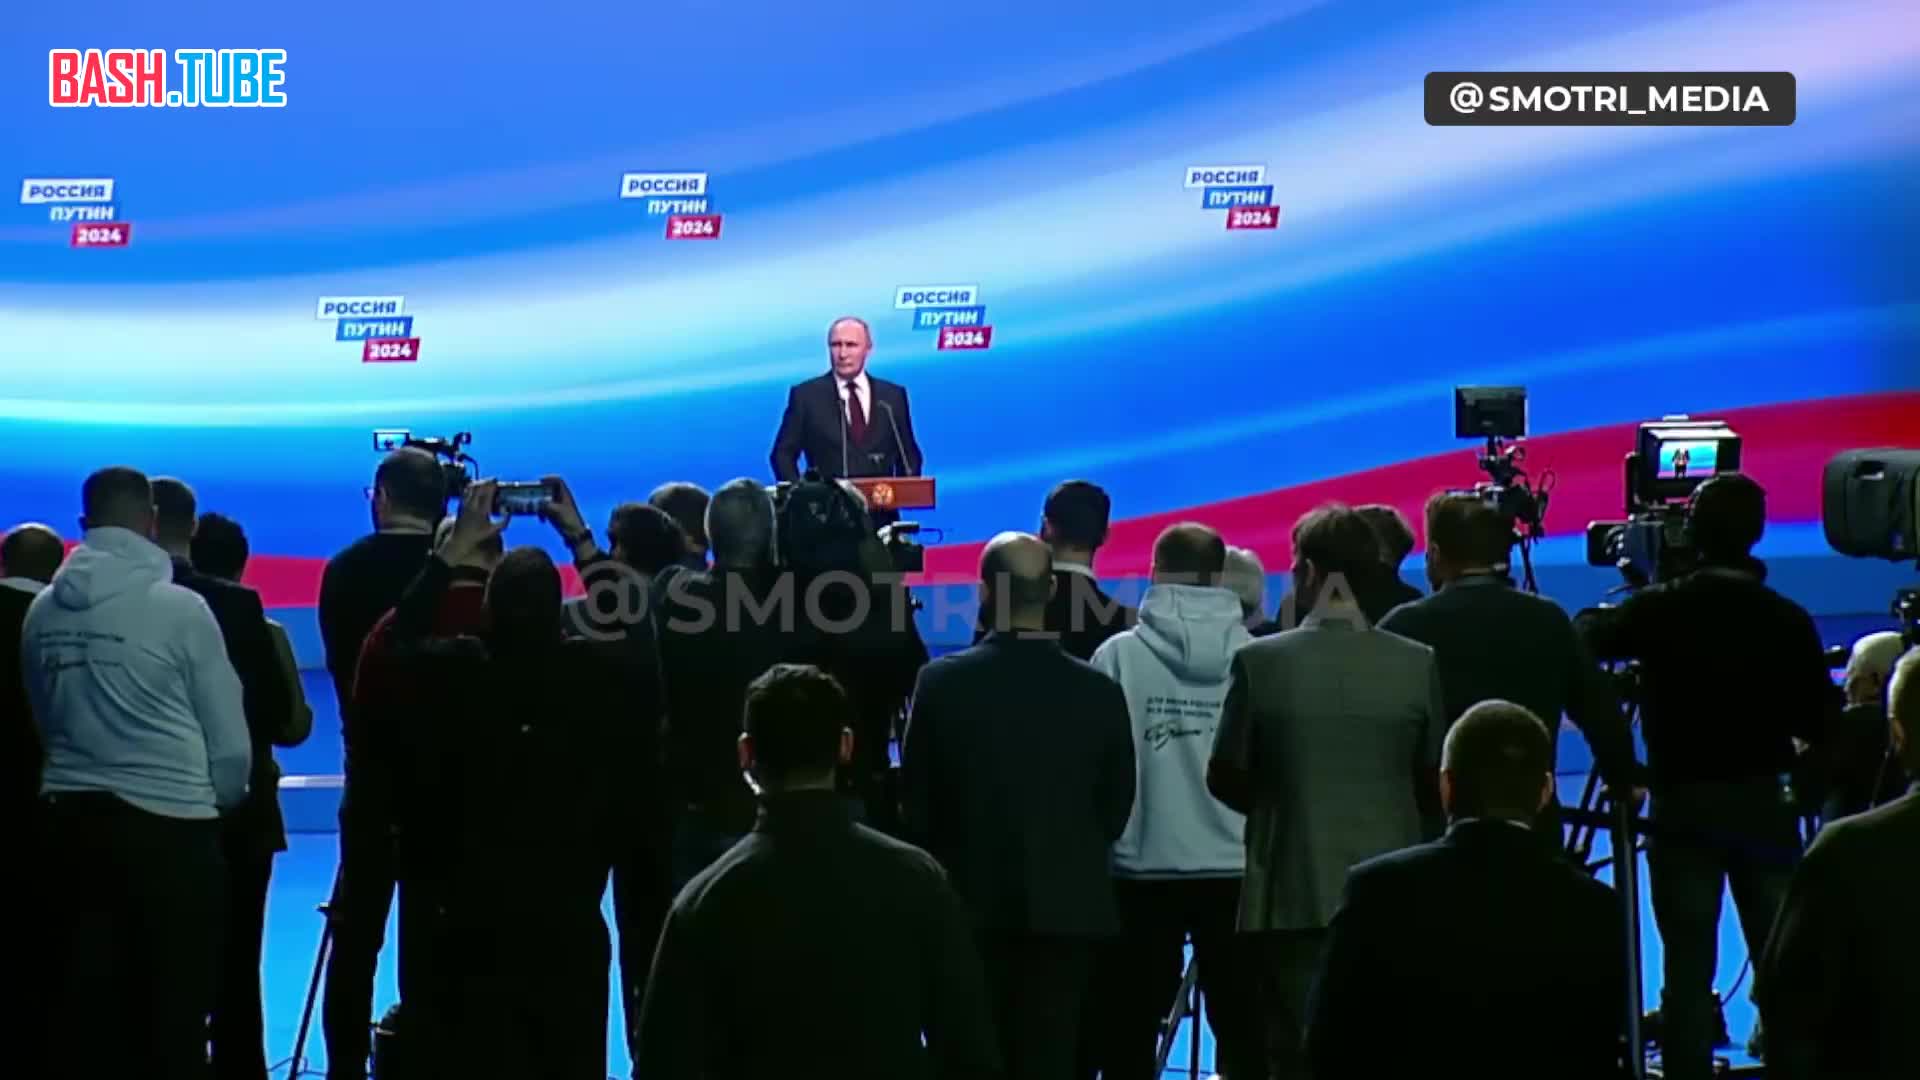  «Все возможно в современном мире», - Владимир Путин о возможной отправке войск НАТО на Украину